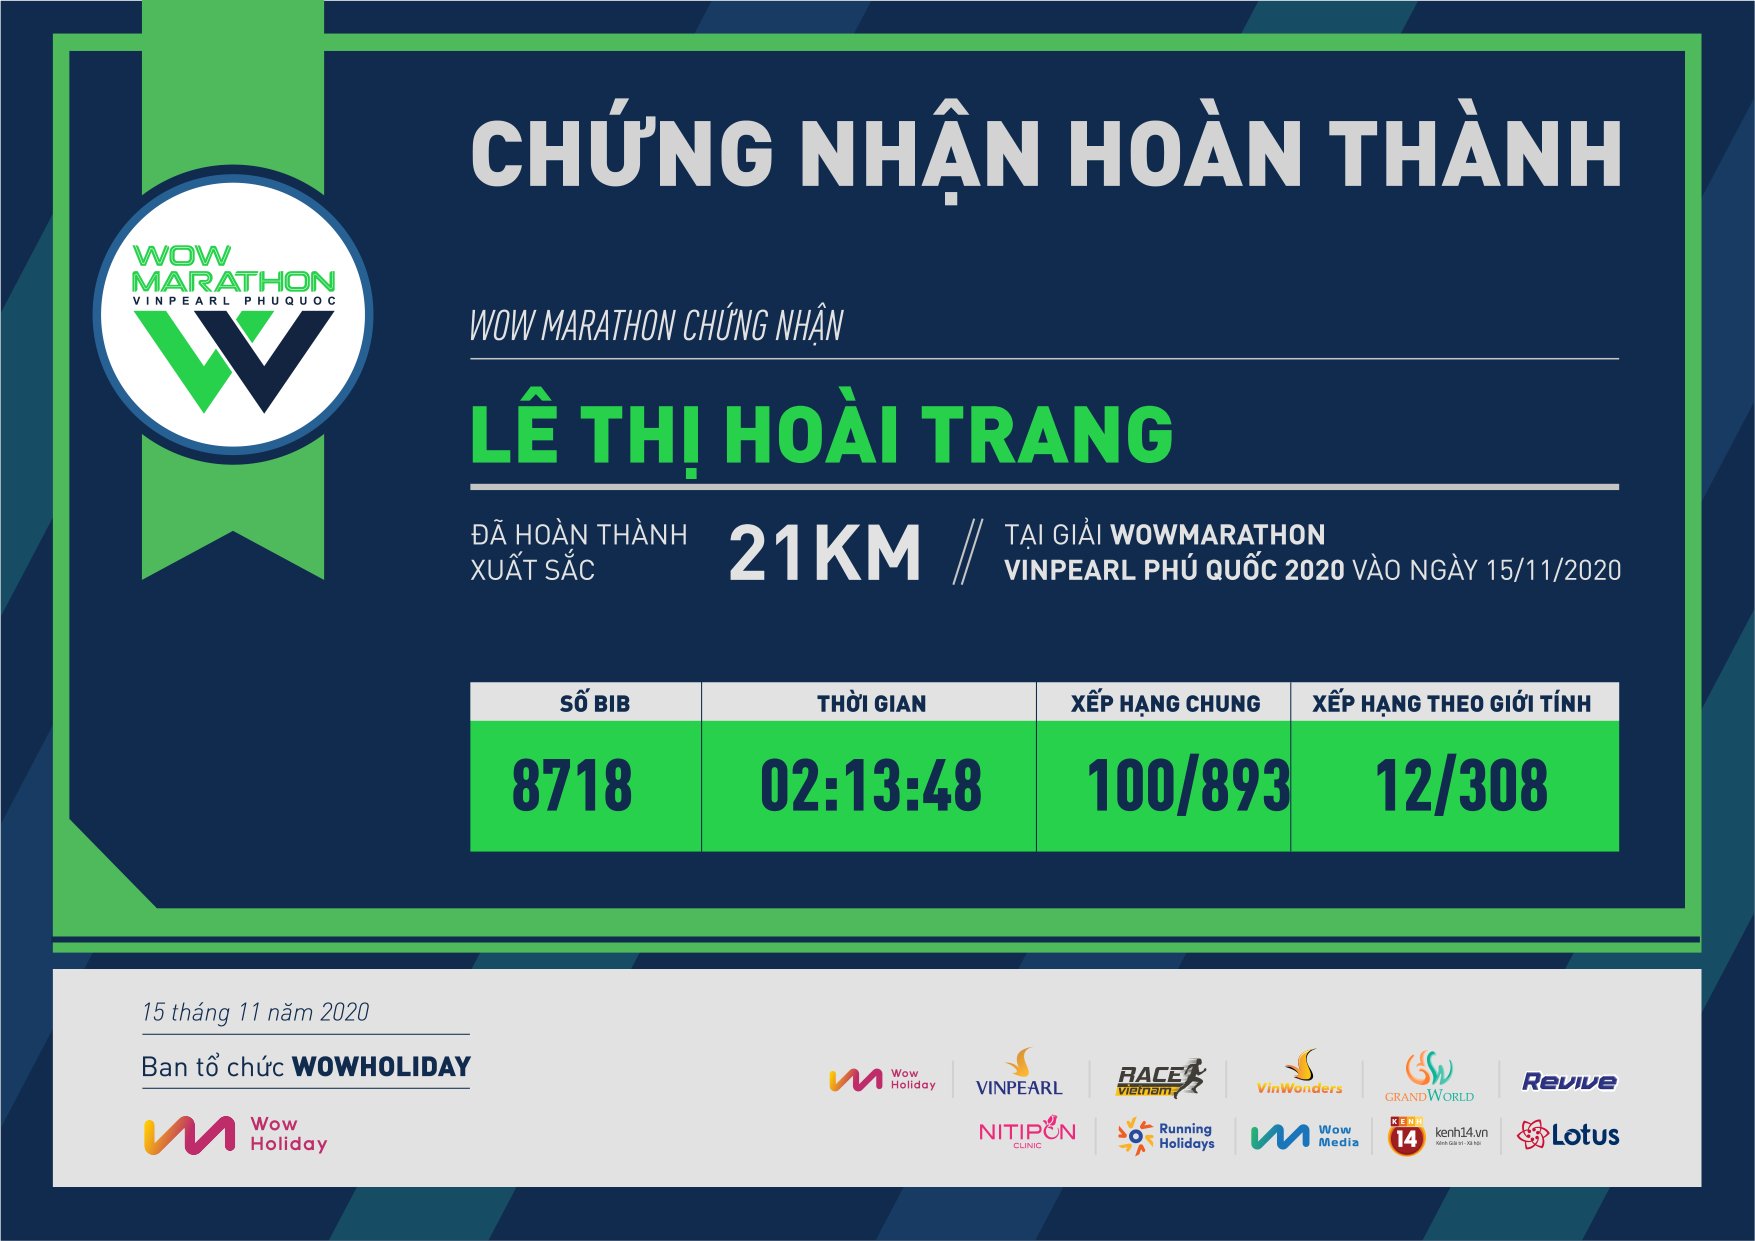 8718 - Lê Thị Hoài Trang